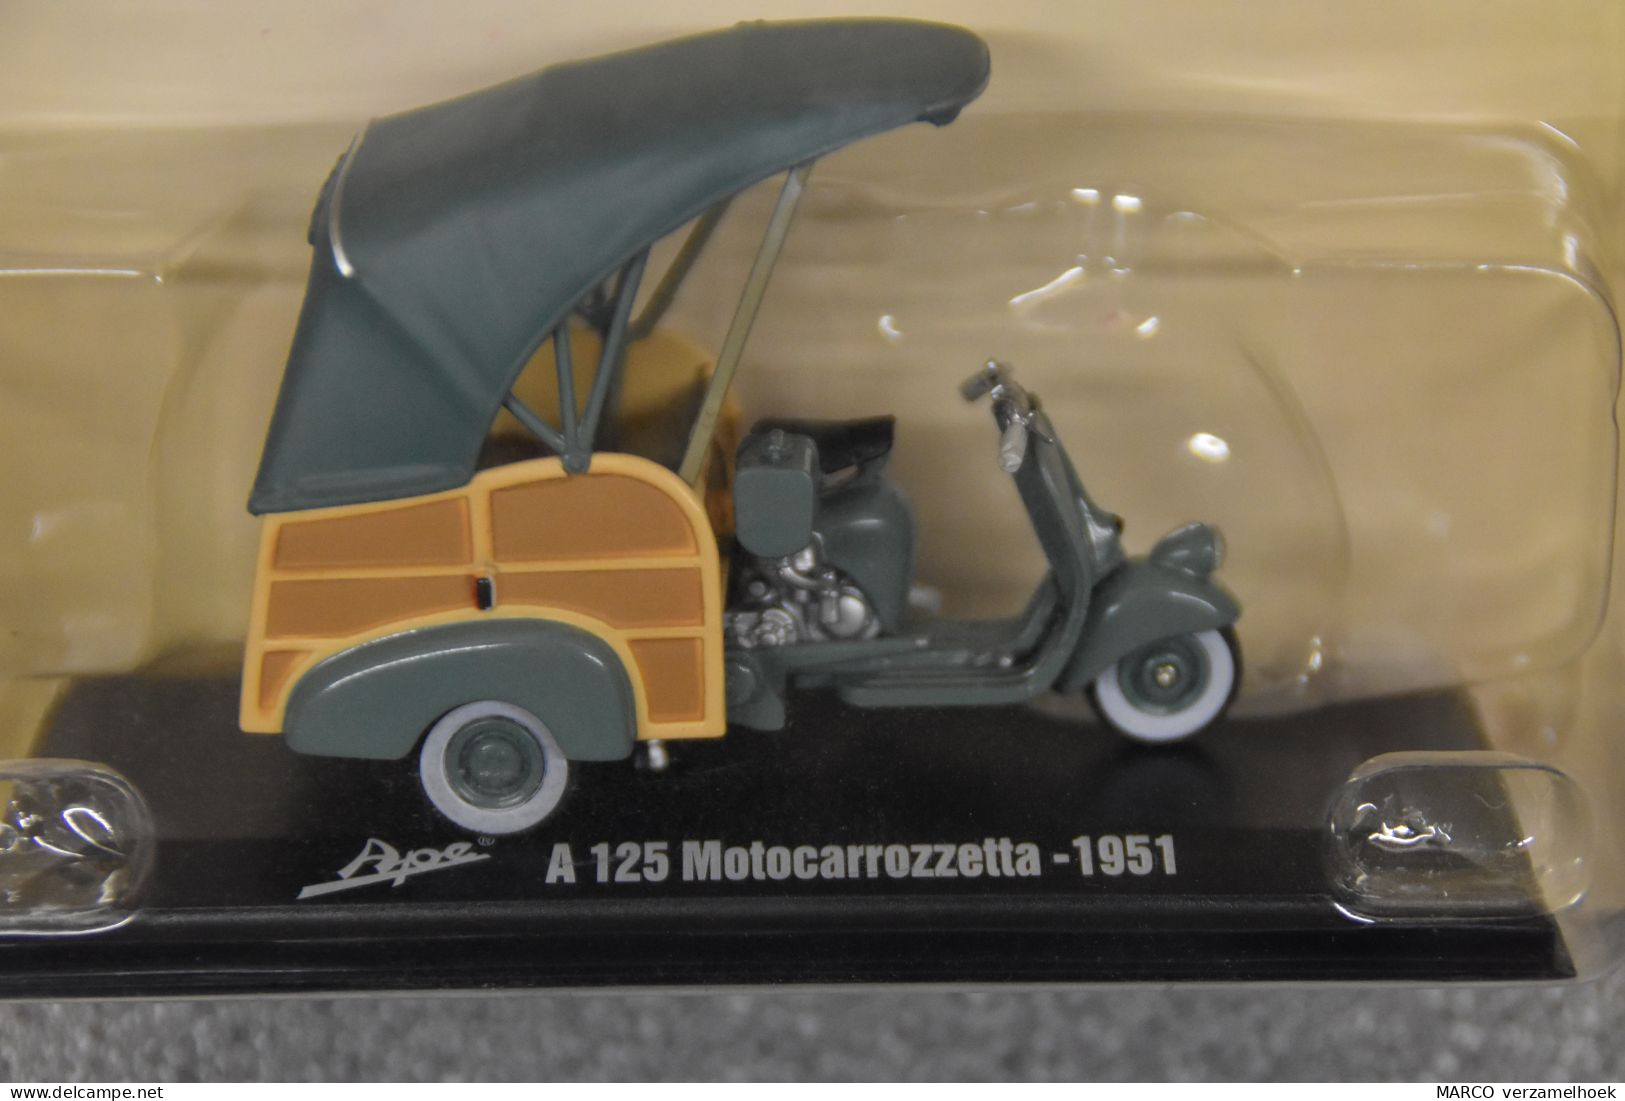 Vespa Ape A125 Motocarrozetta 1951 Hachette Fascicoli Srl. Milano Italy (I) Scale 1:32 - Escala 1:32